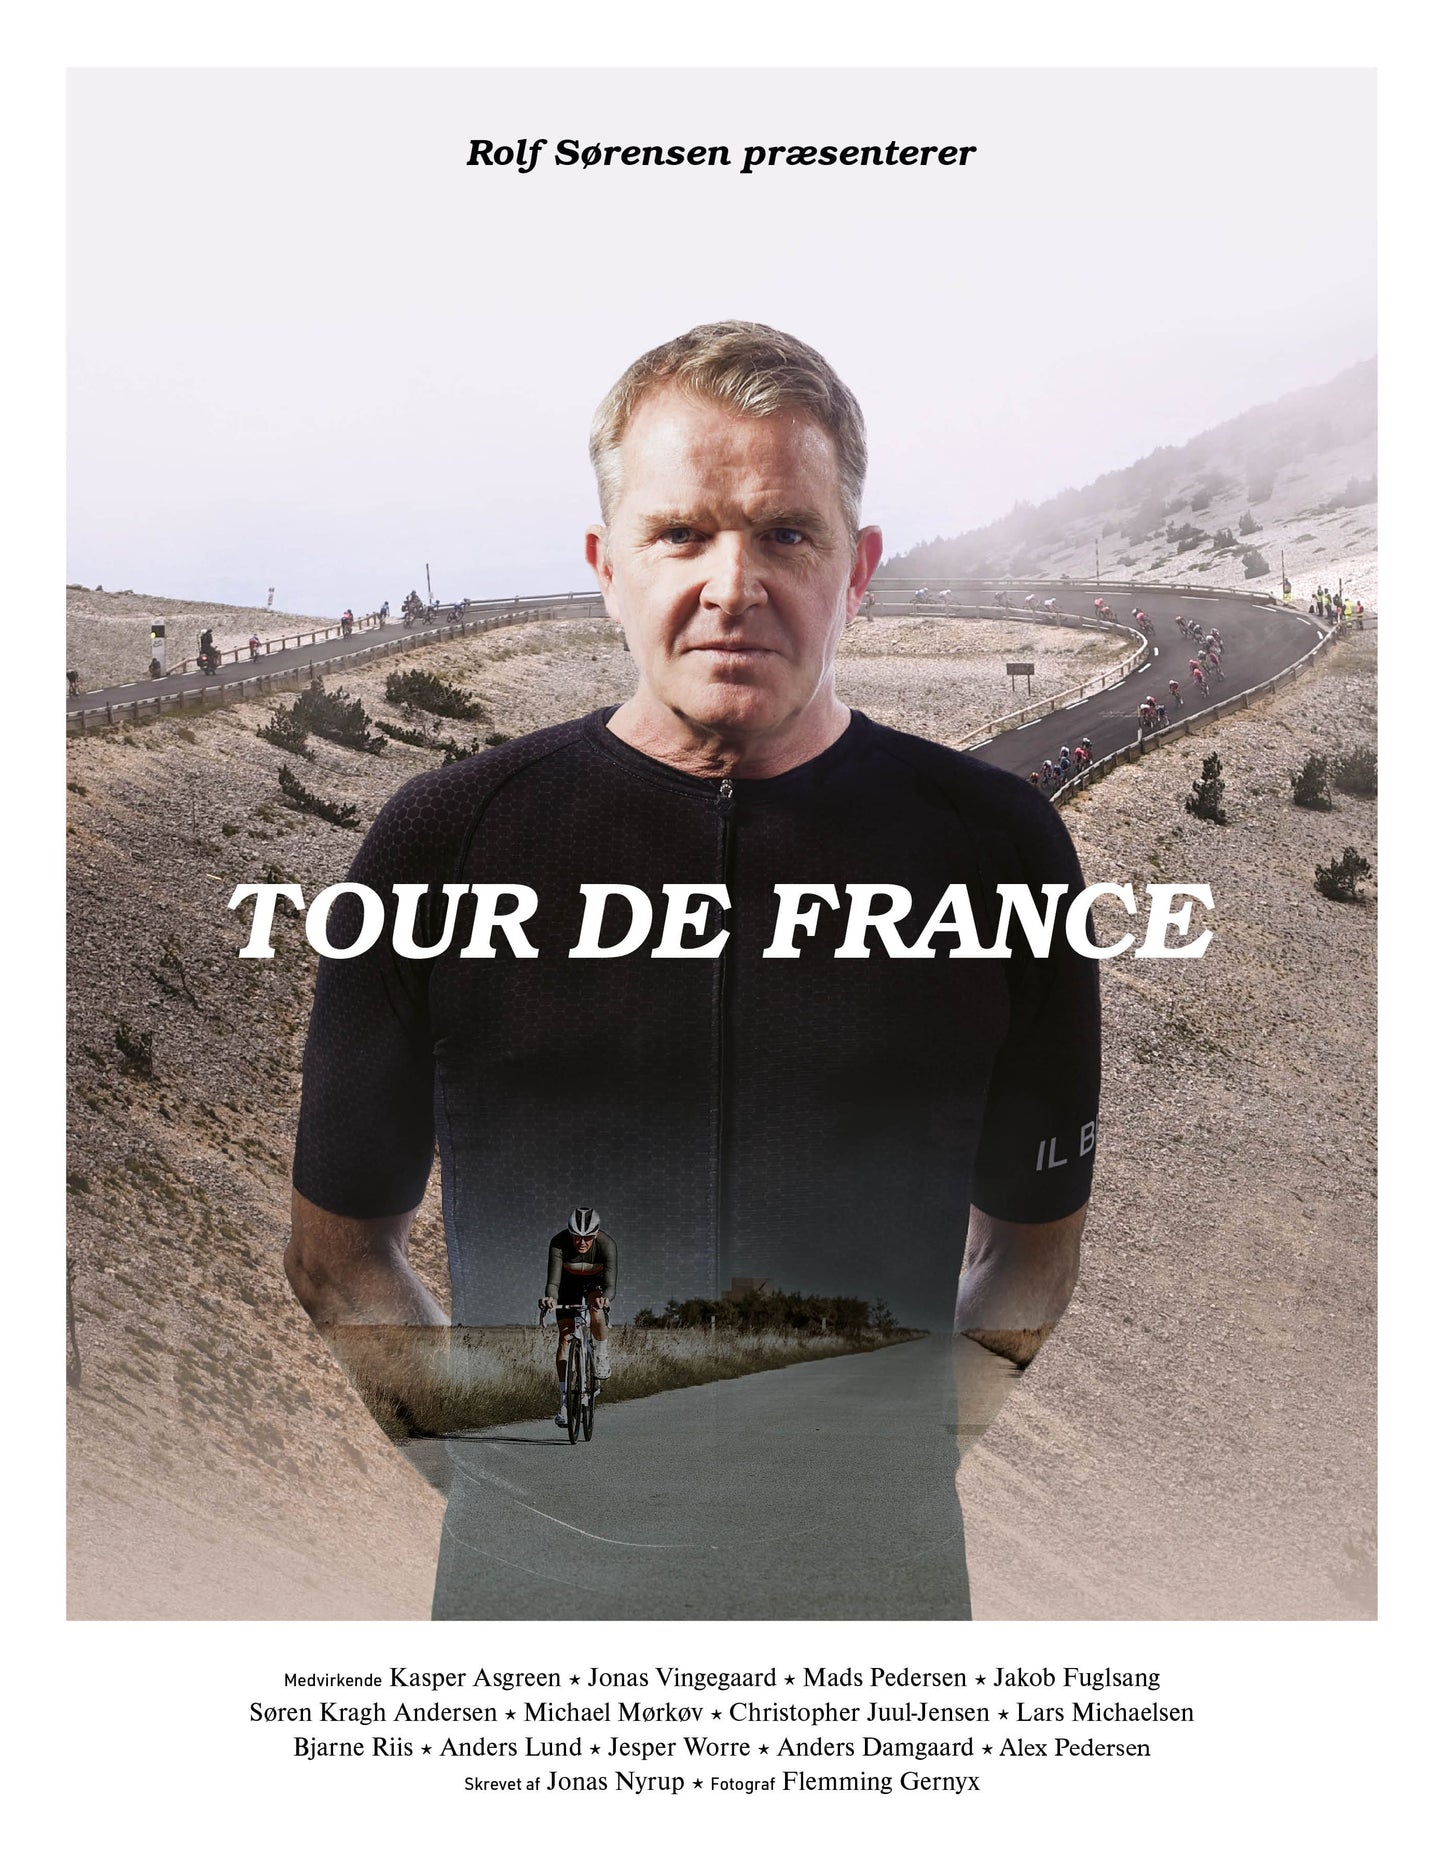 Rolf Sørensen præsenterer Tour de France